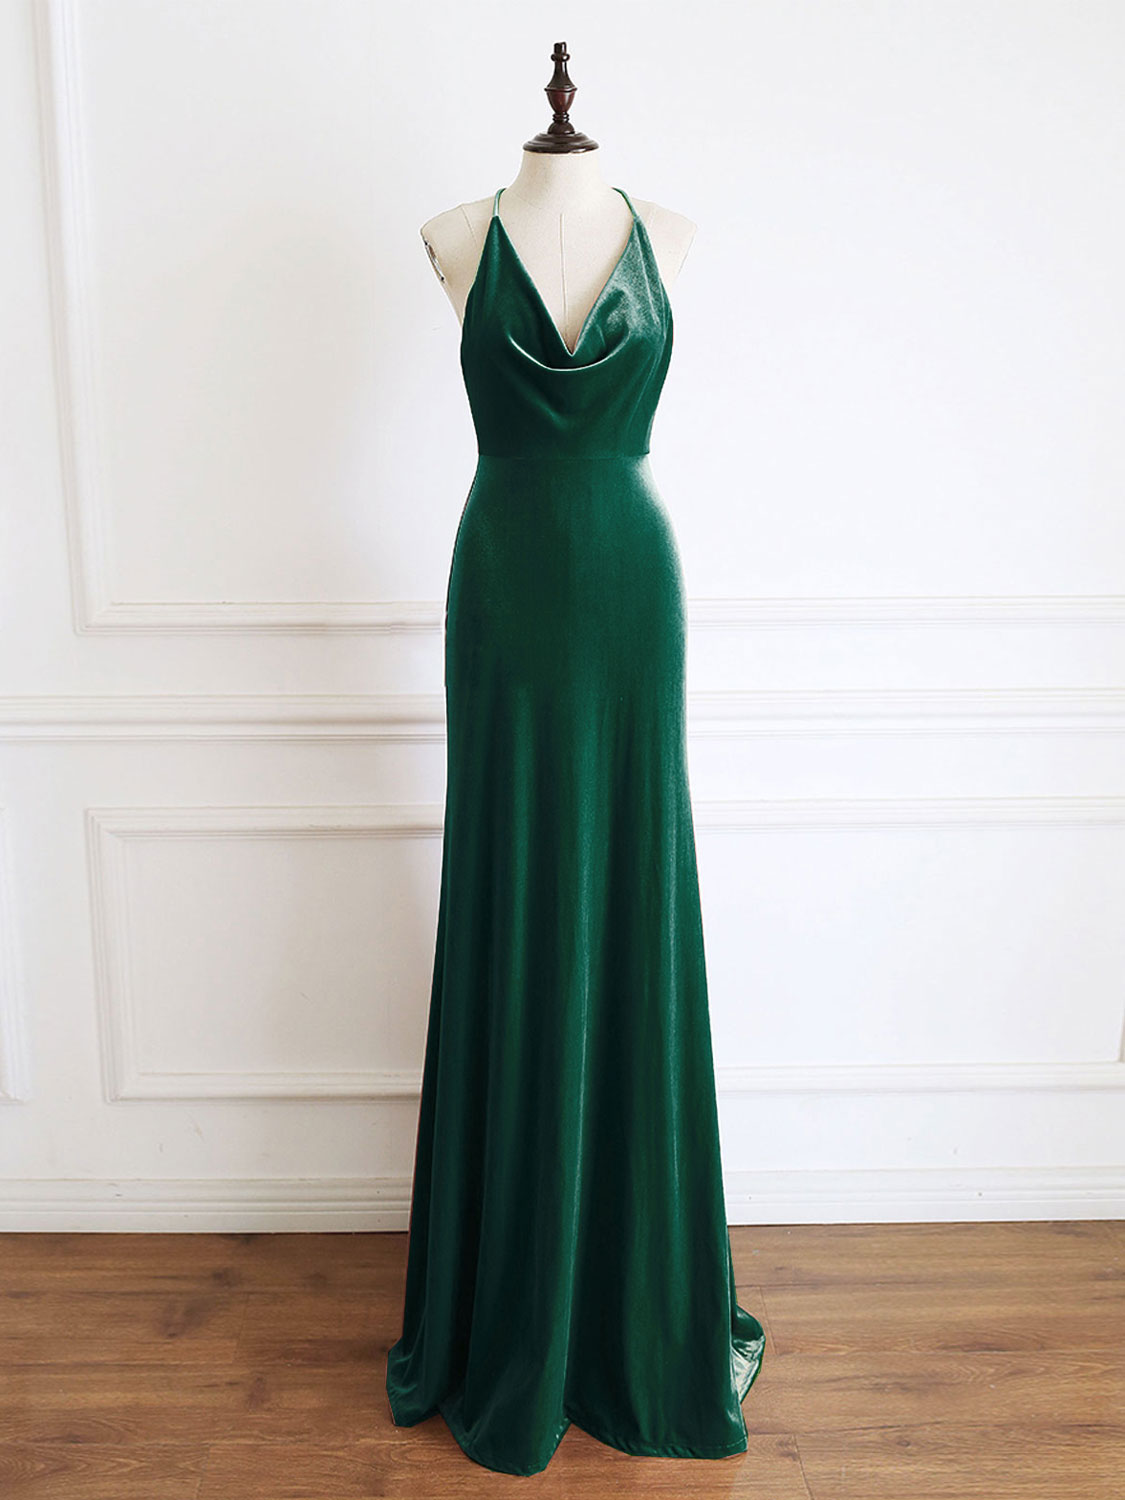 Green Mermaid Velvet Long Prom Dress Outfits For Girls, Green Formal Evening Dresses